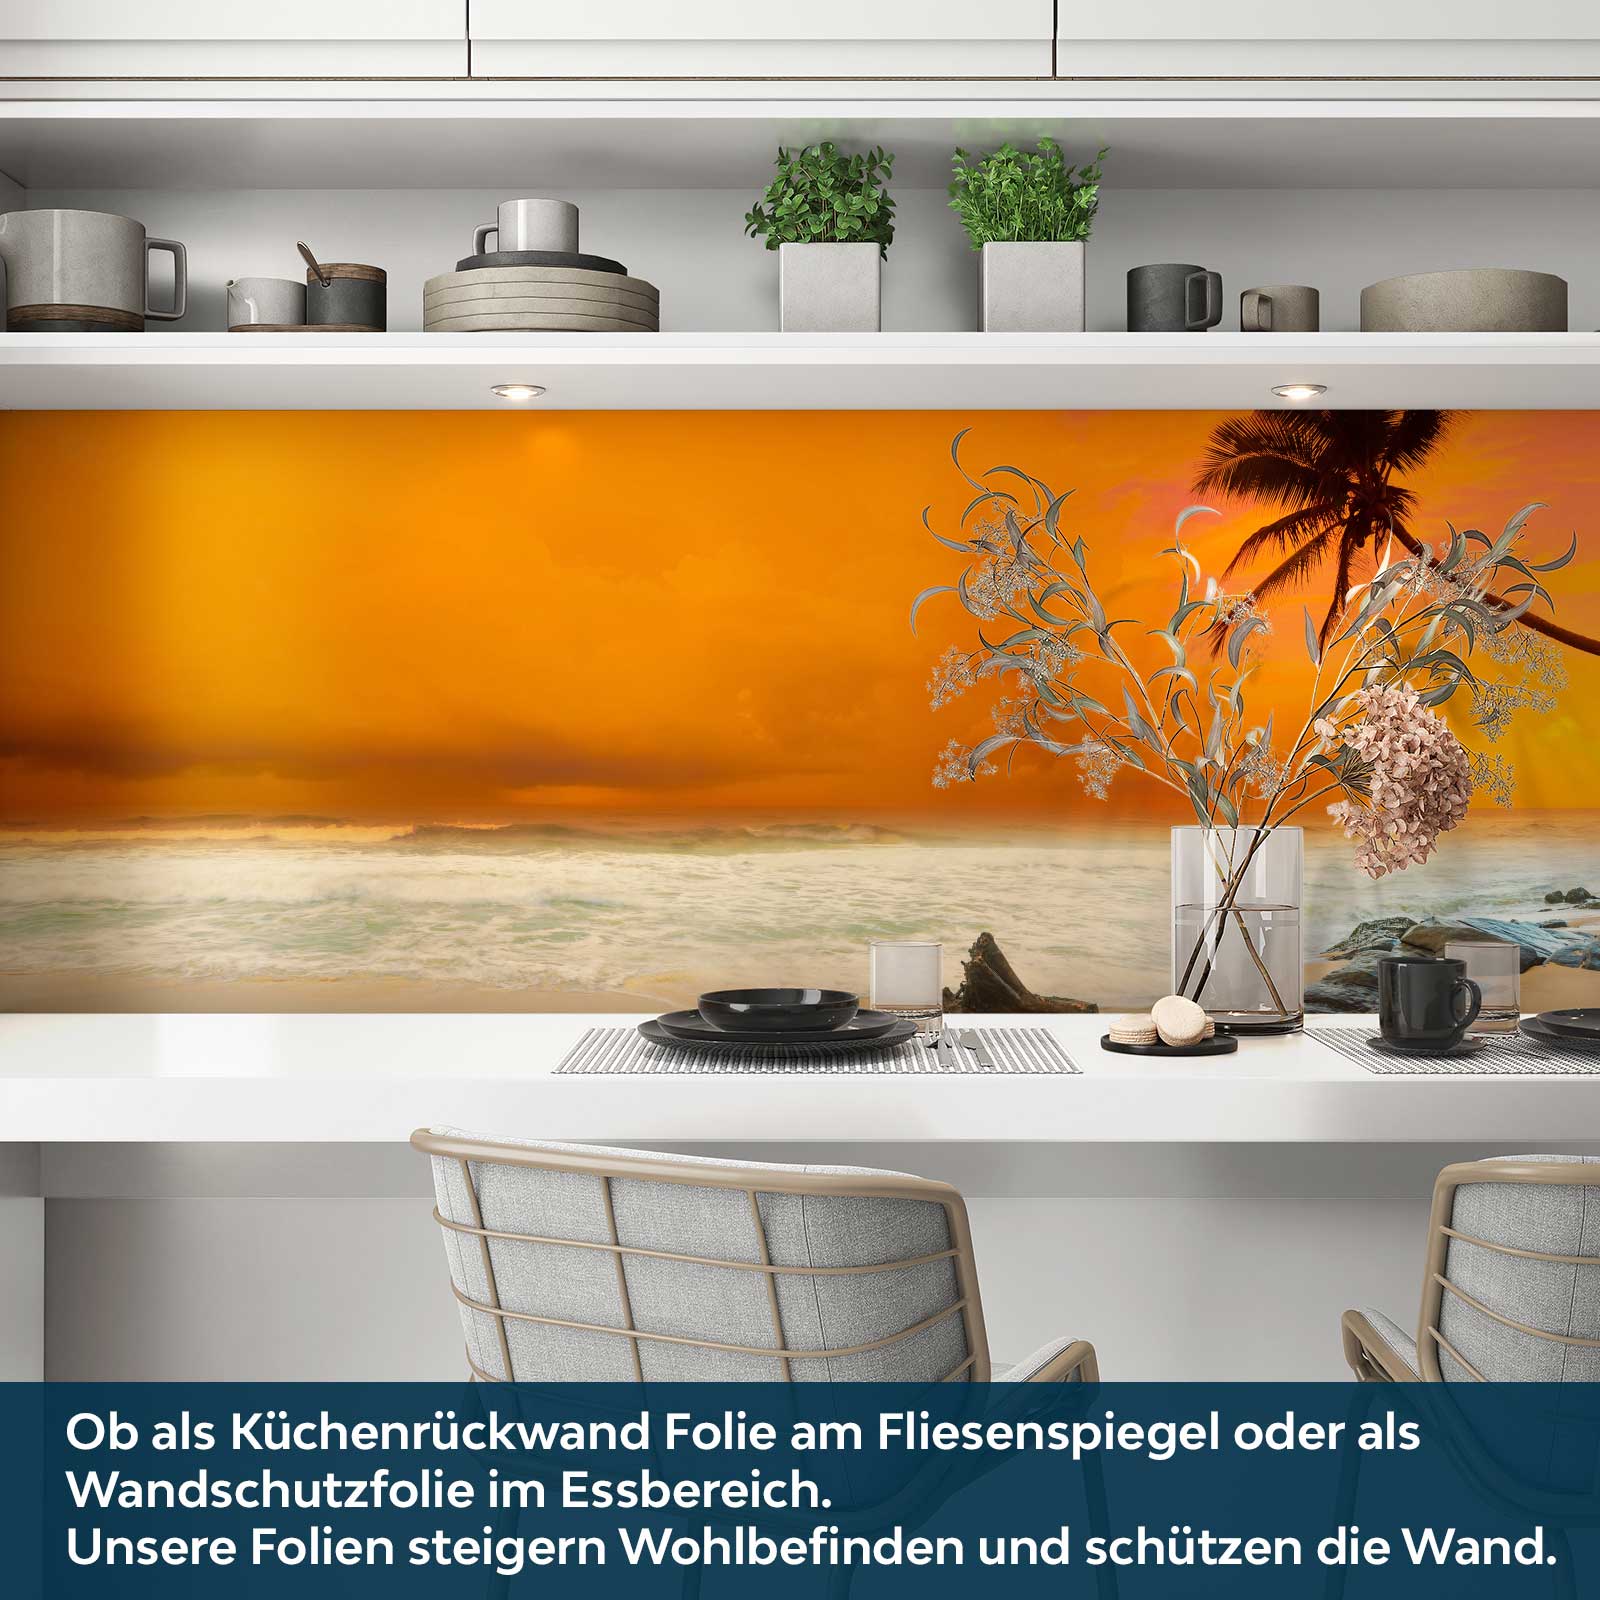 https://www.folien21.de/images/product_images/original_images/kuechenrueckwand-folie/landschaften/163/kuechenrueckwand-selbstklebend-strandpanorama-a3.jpg